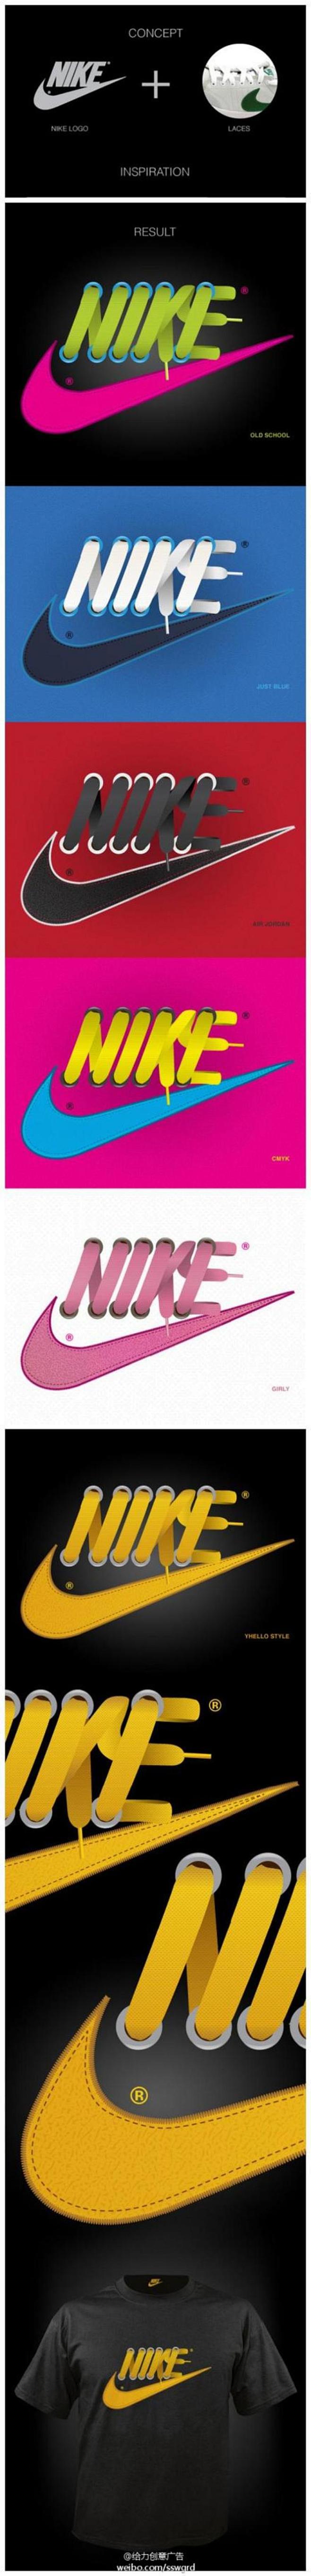 Nike鞋带创意广告